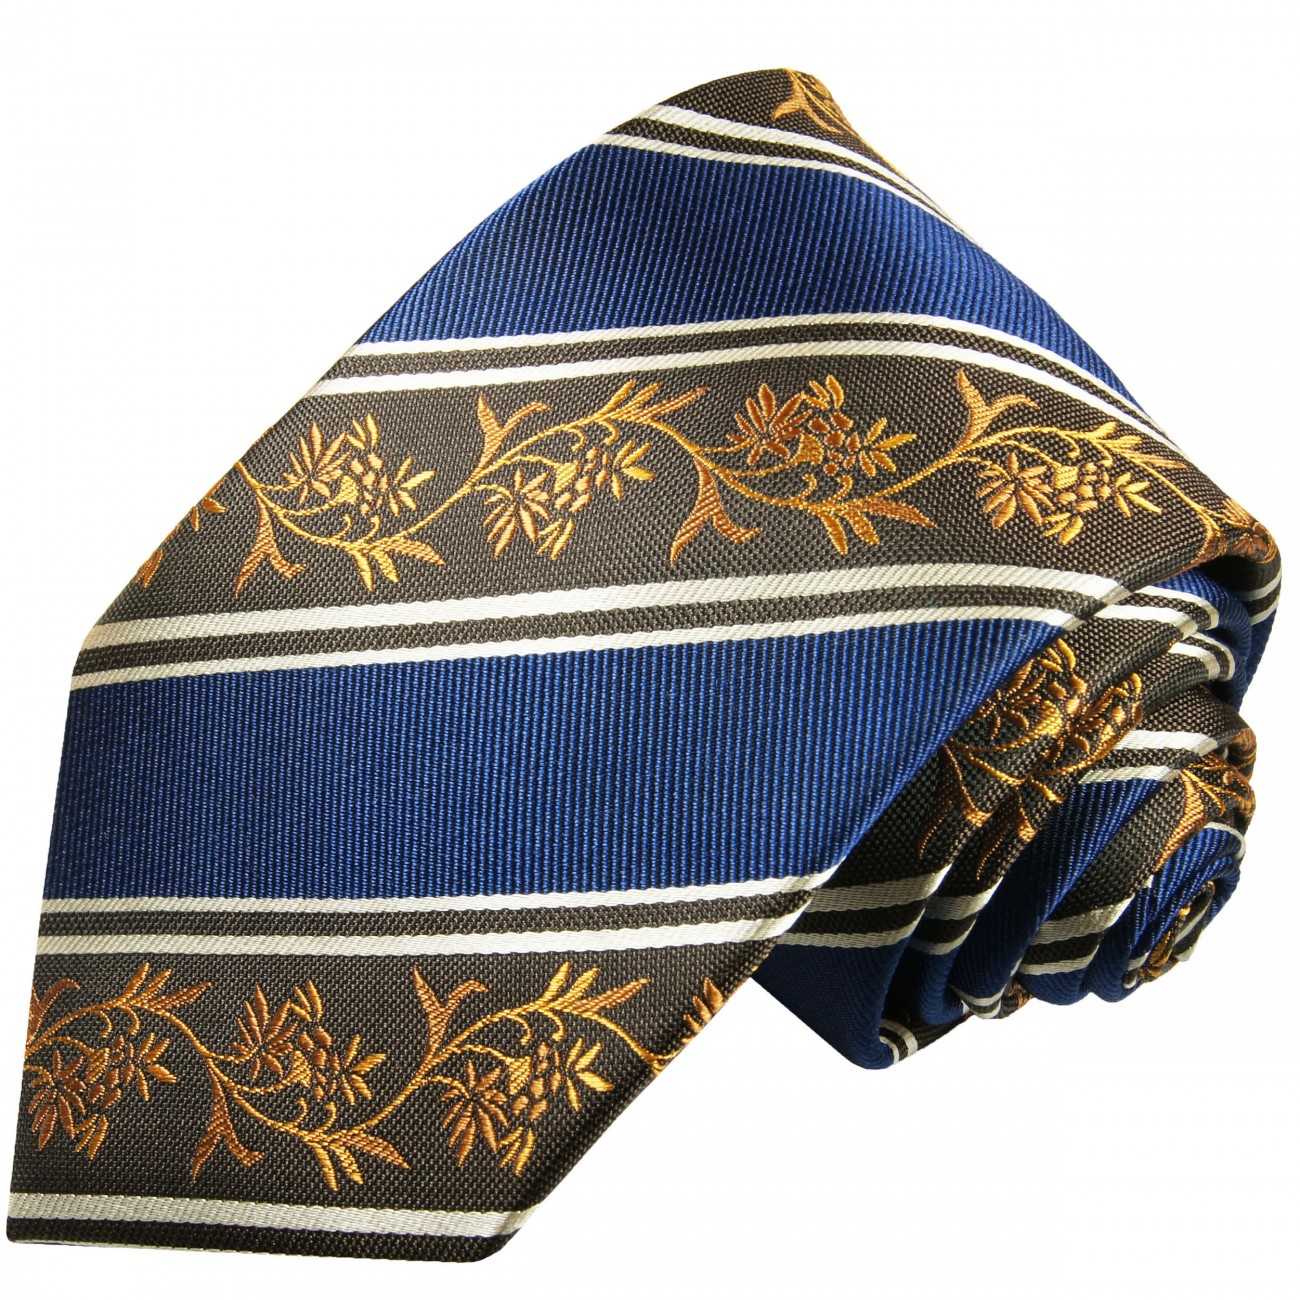 Krawatte blau gold braun geblümt gestreift Seide 390